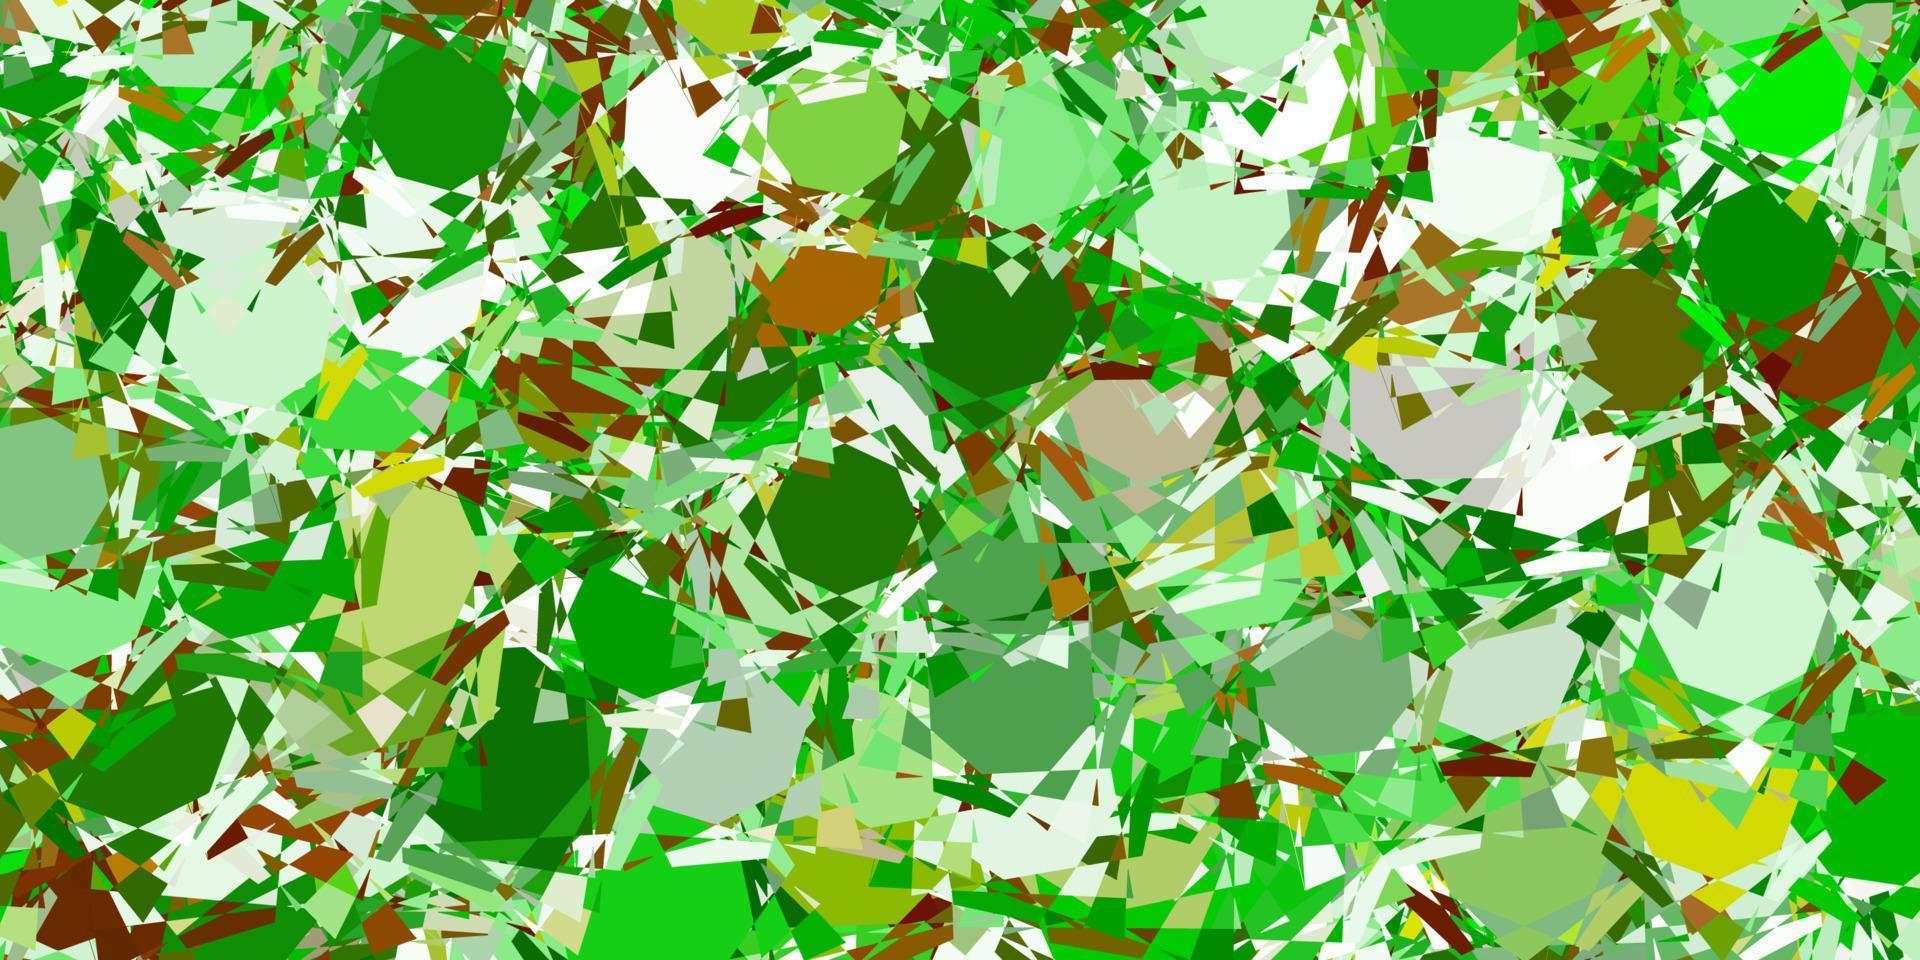 trama vettoriale verde chiaro con triangoli casuali.